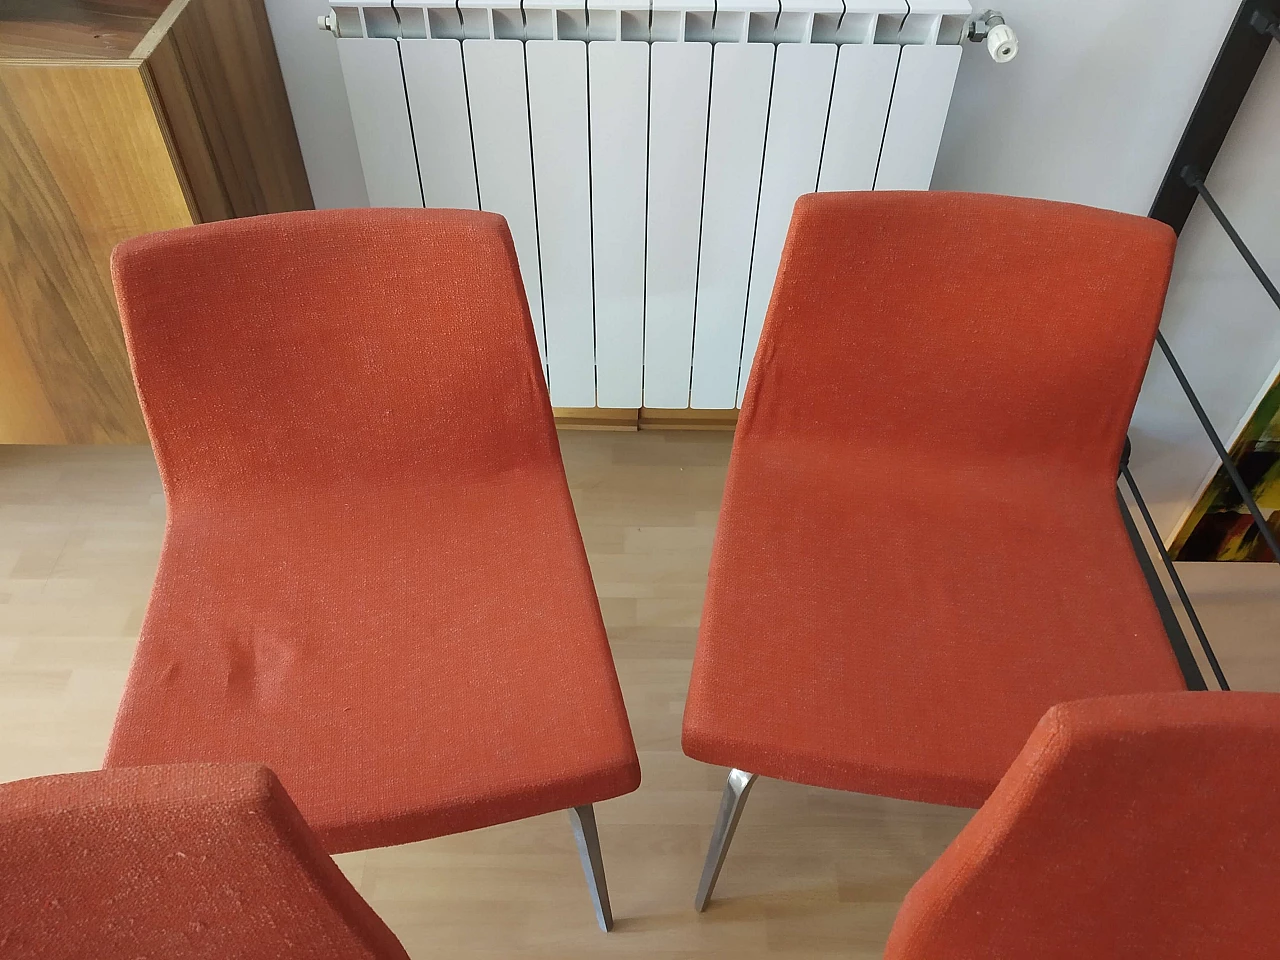 4 Hella Chairs by Mauro Lipparini for MisuraEmme 1477136